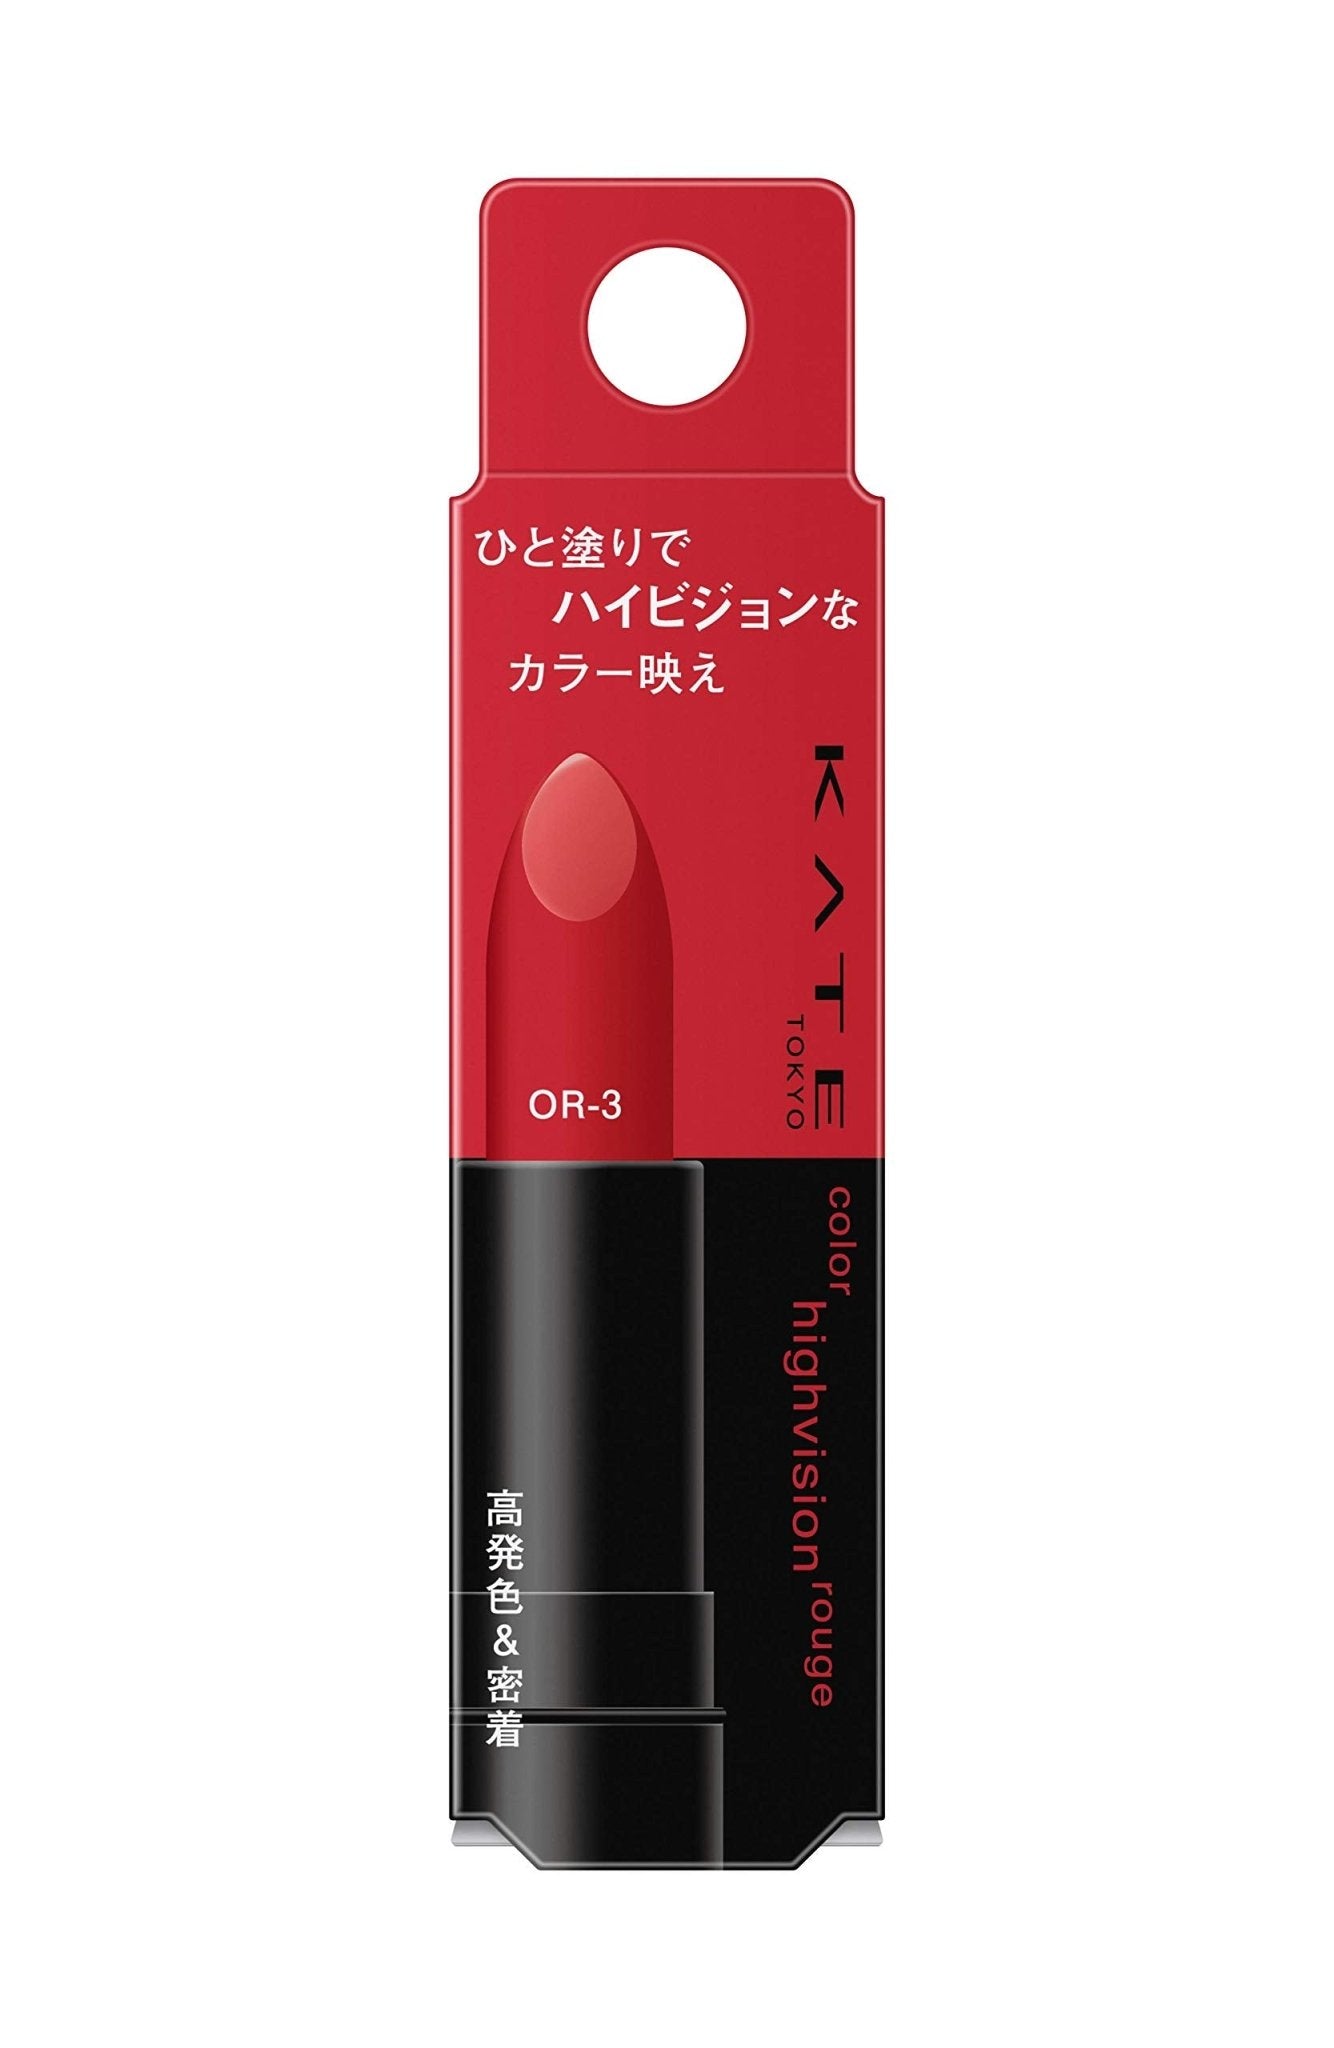 Kate Hi - Vision Lipstick Rouge Or - 3 Color - Long - Lasting Matte Finish